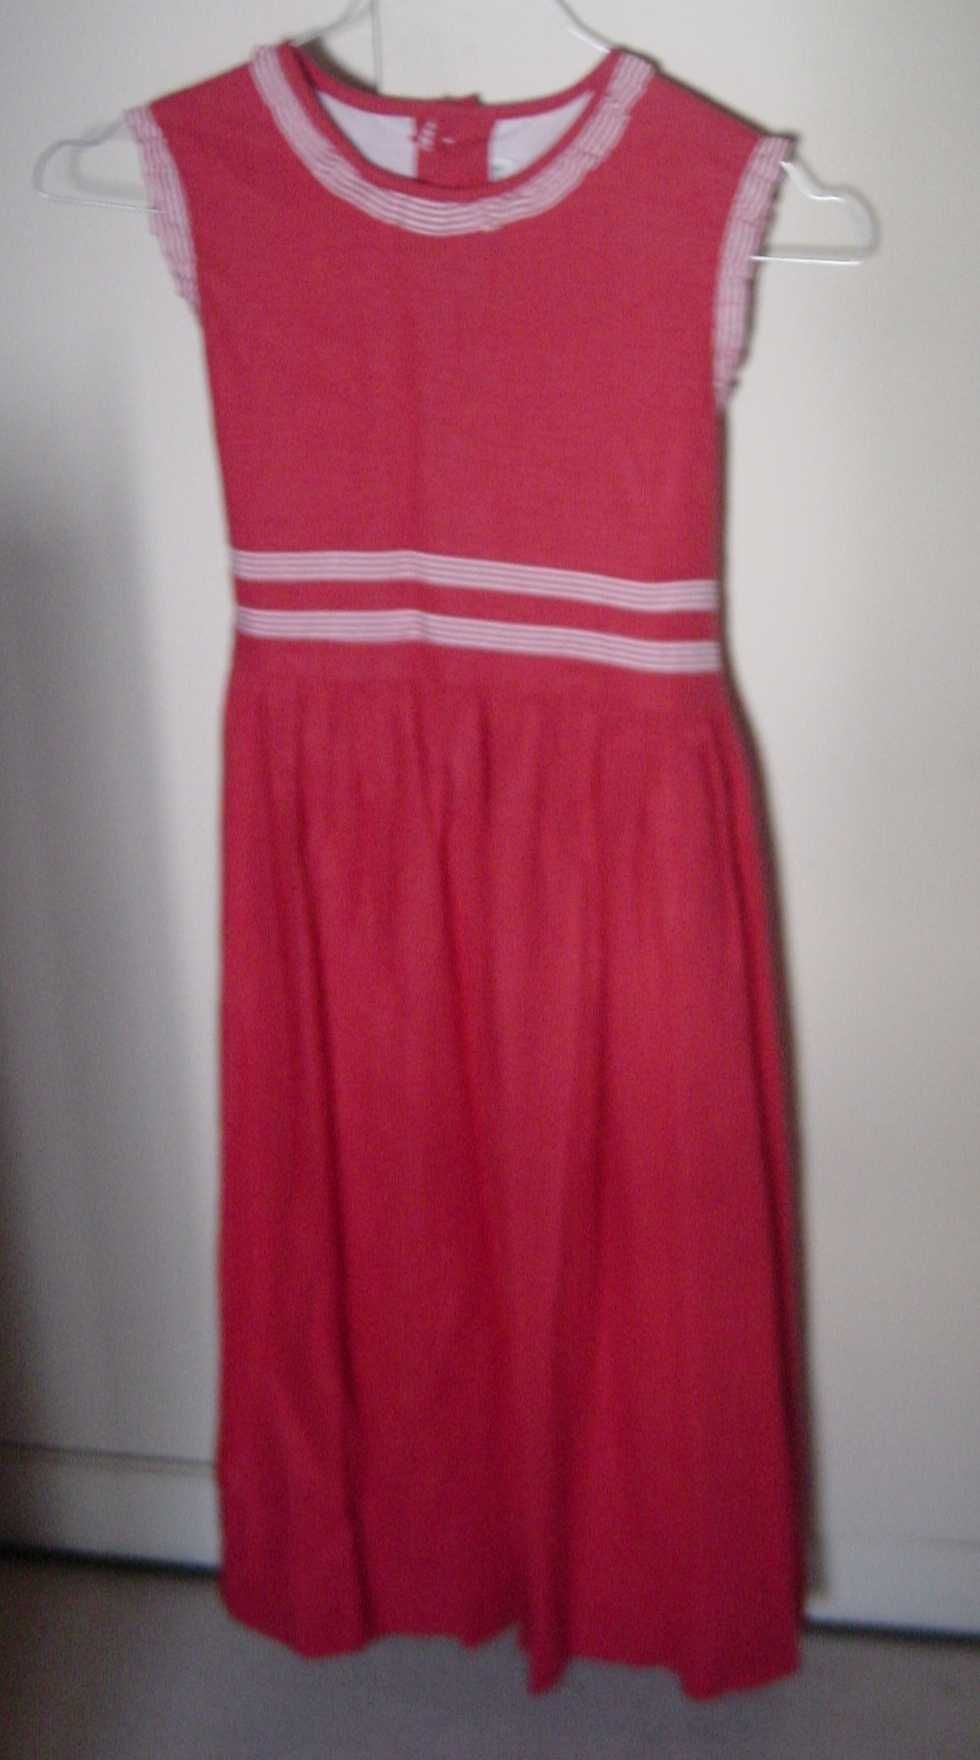 Vestido de Verão T 12A. Tecido alinhado vermelho da Marca NECK & NECK